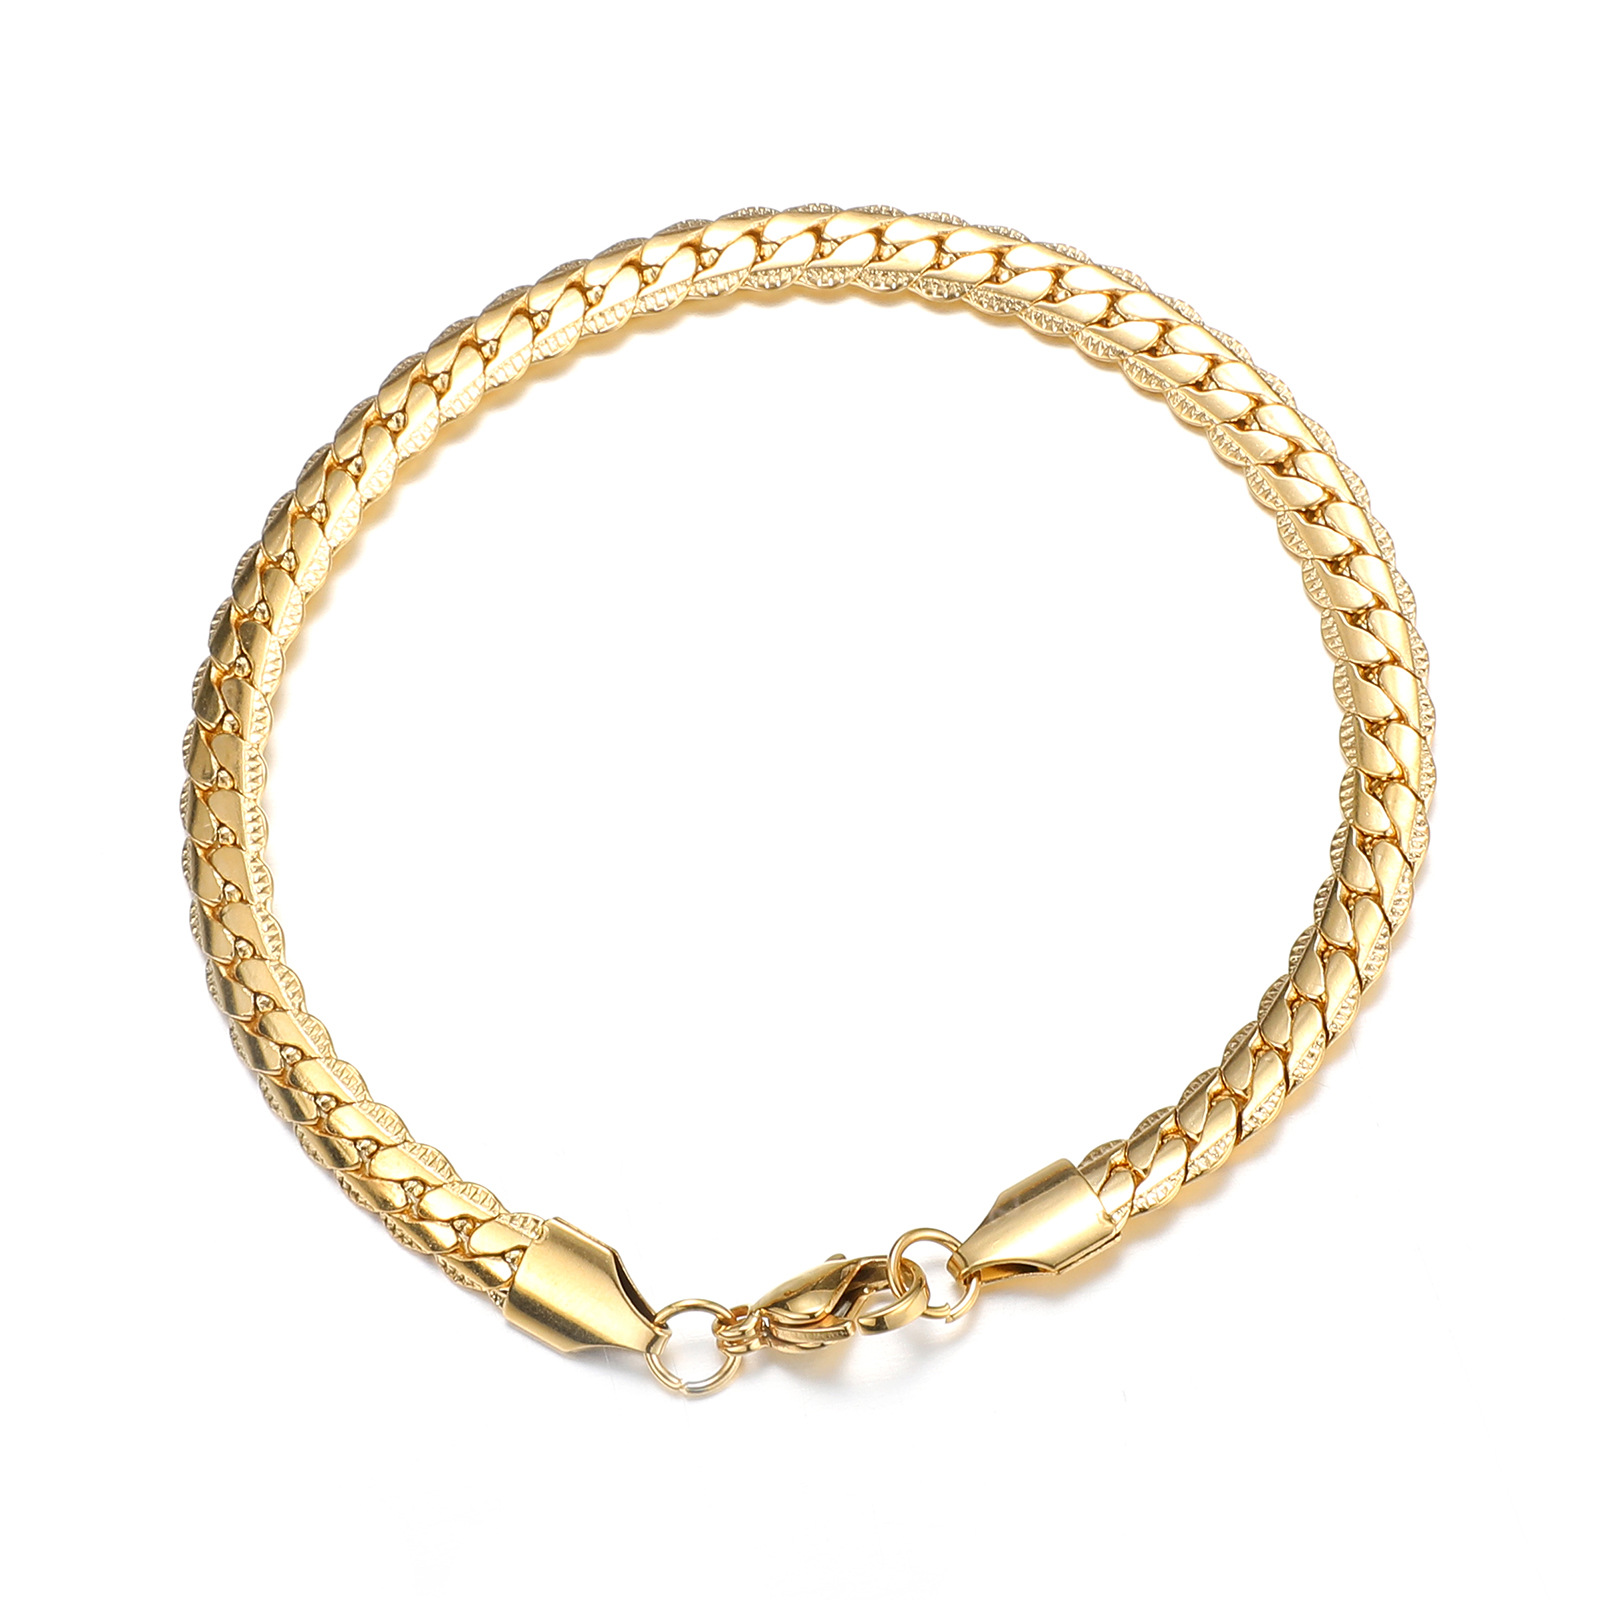 Gold bracelet (21cm long)